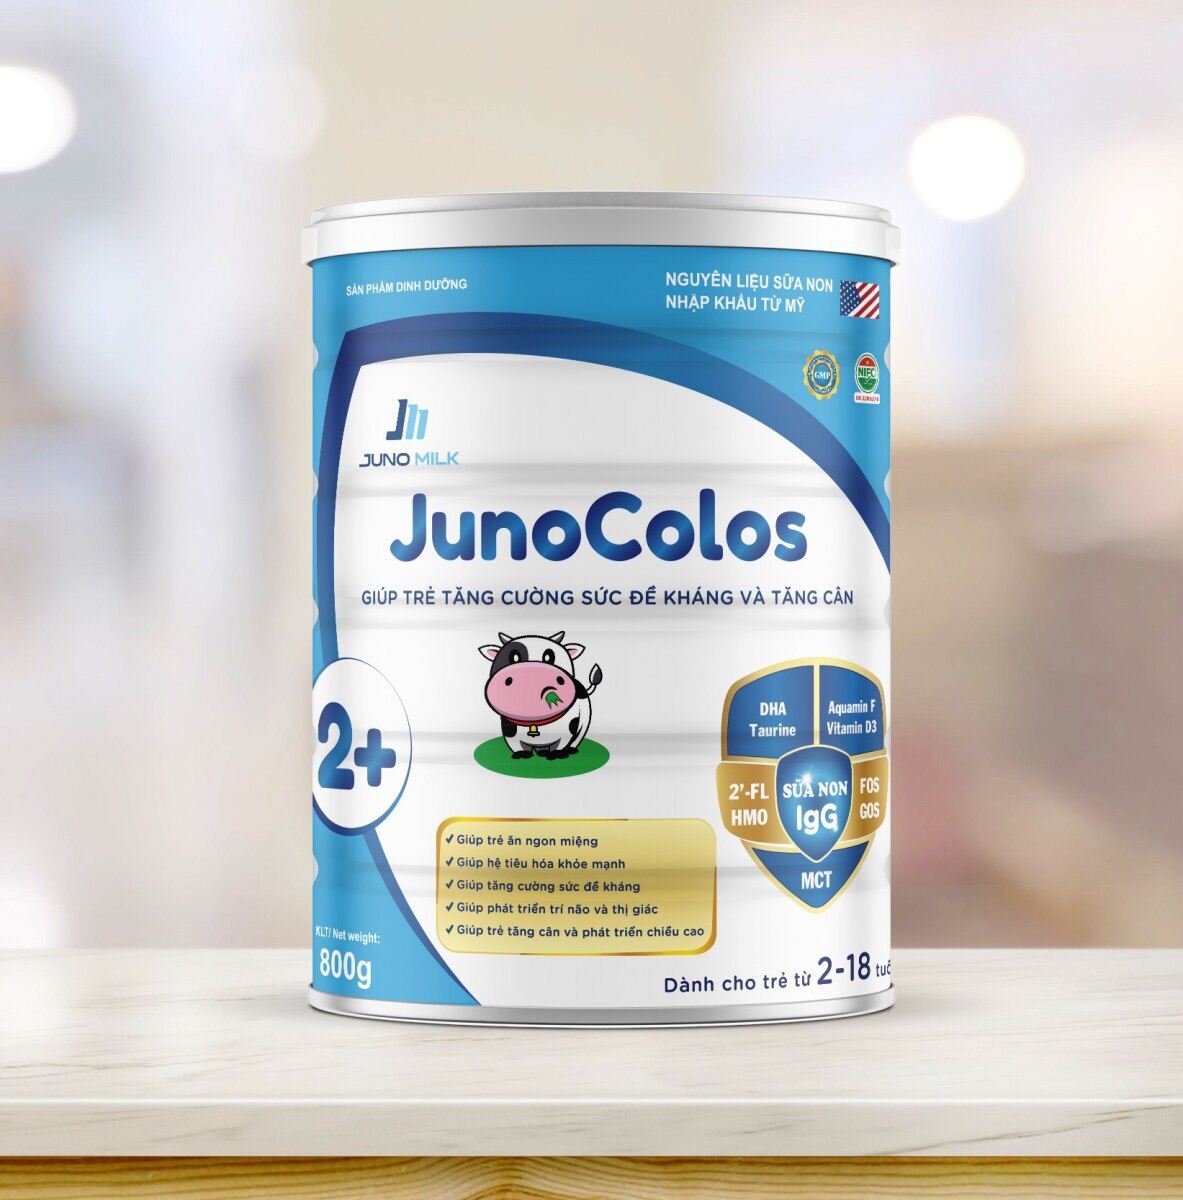 Sữa Junocolos 2+ giúp trẻ tăng sức đề kháng và tăng cân